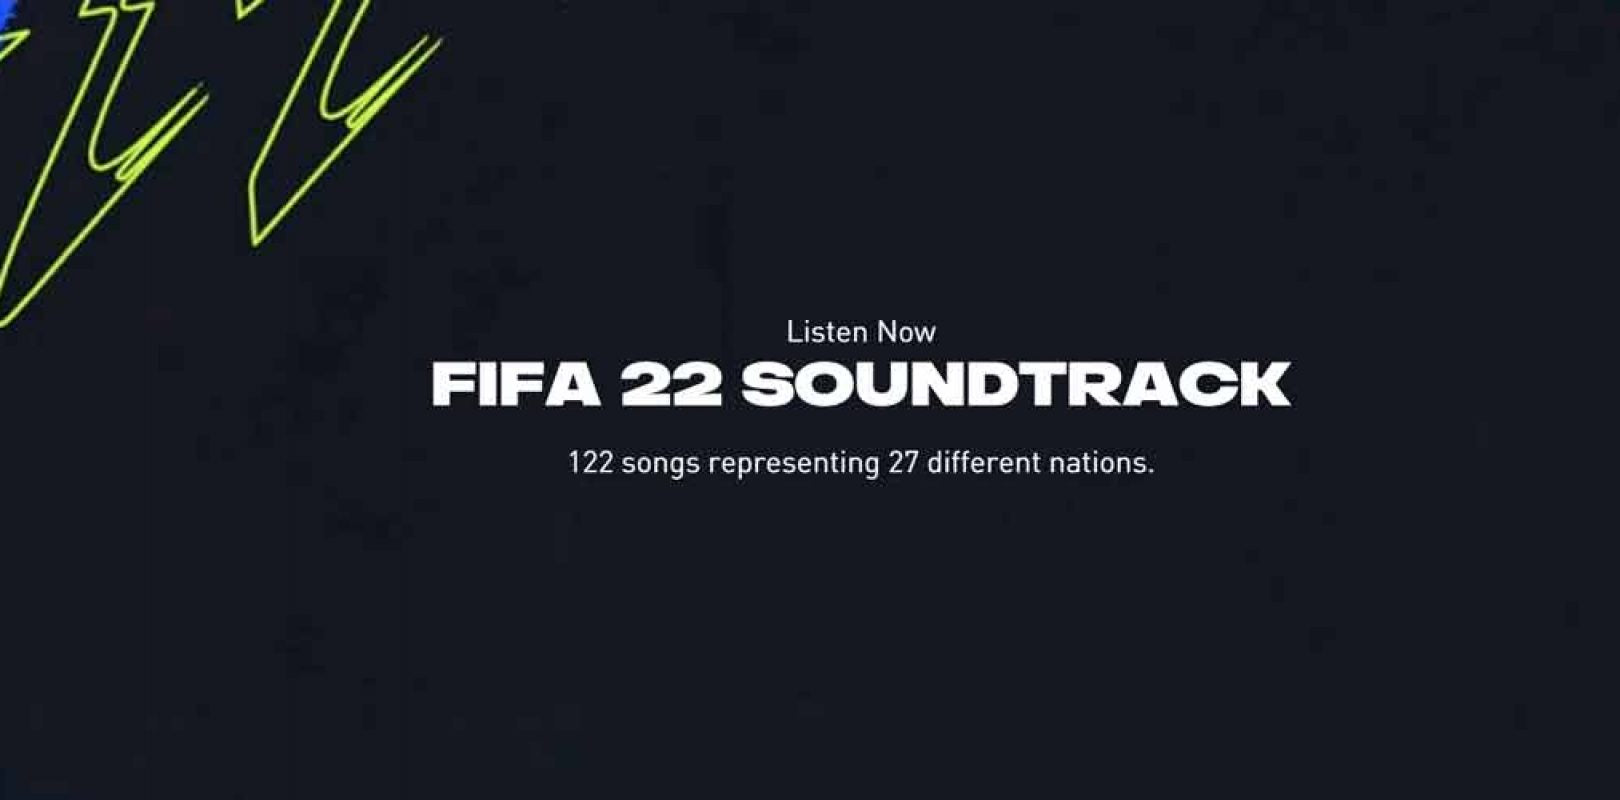 EA SPORTS REVELA EL SOUNDTRACK DE FIFA 22 CON SWEDISH HOUSE MAFIA, DJ SNAKE, EARTHGANG Y MÁS